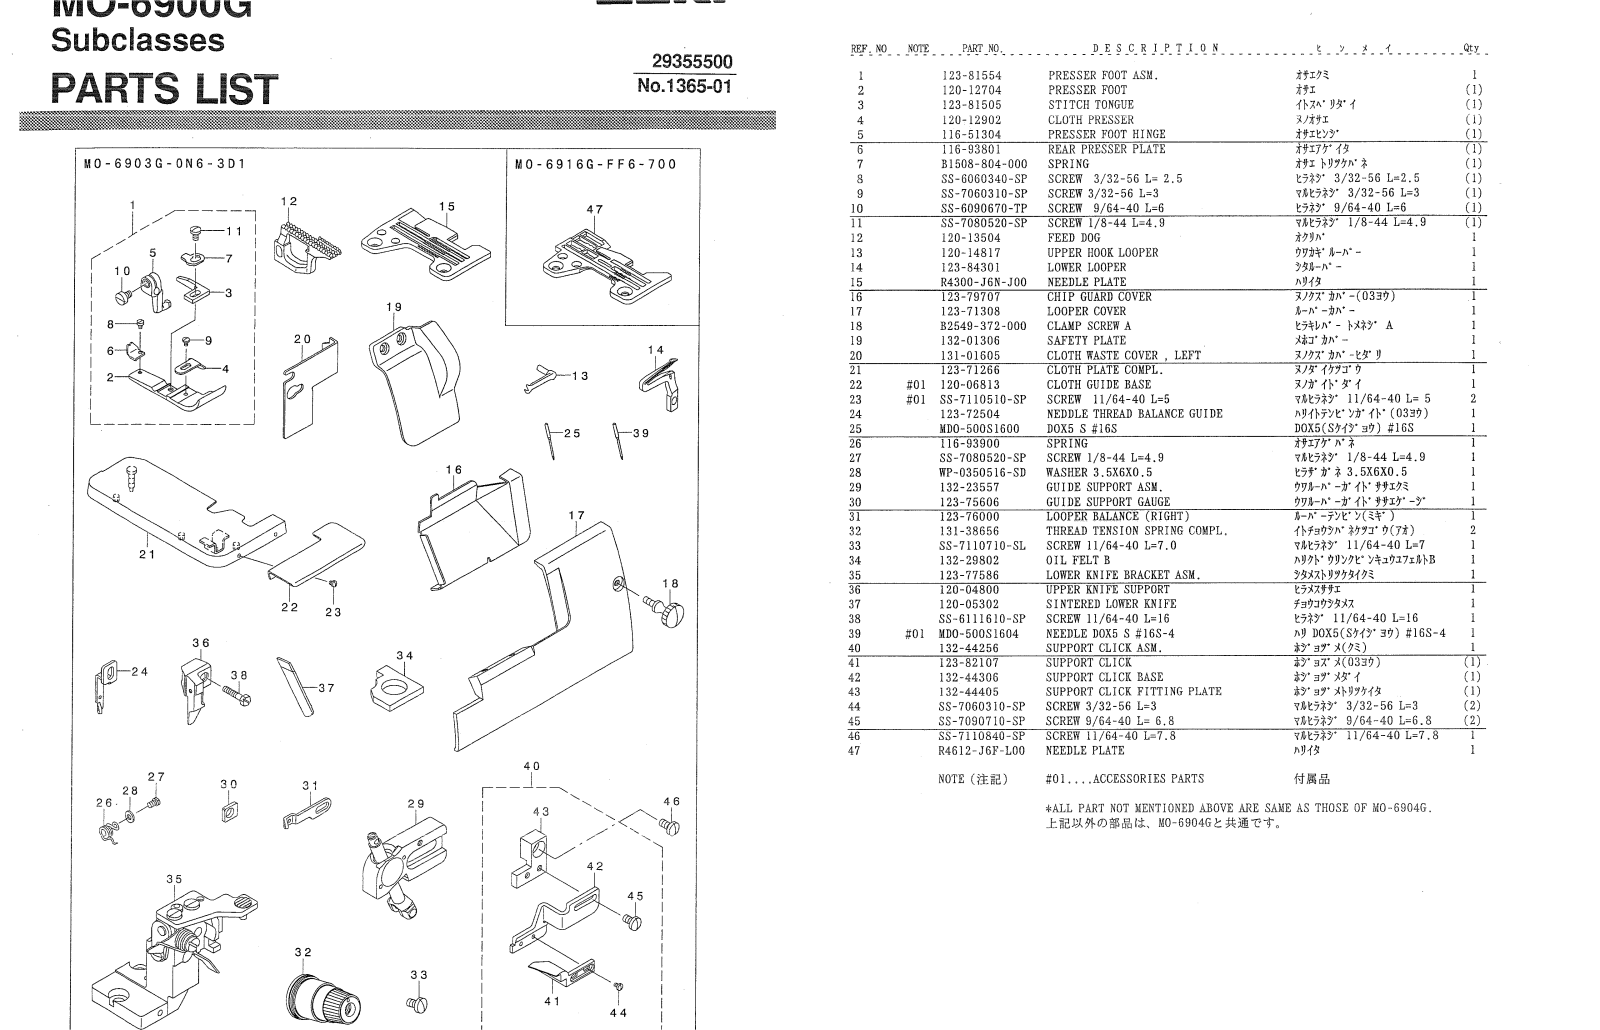 Juki MO-6900G Parts List